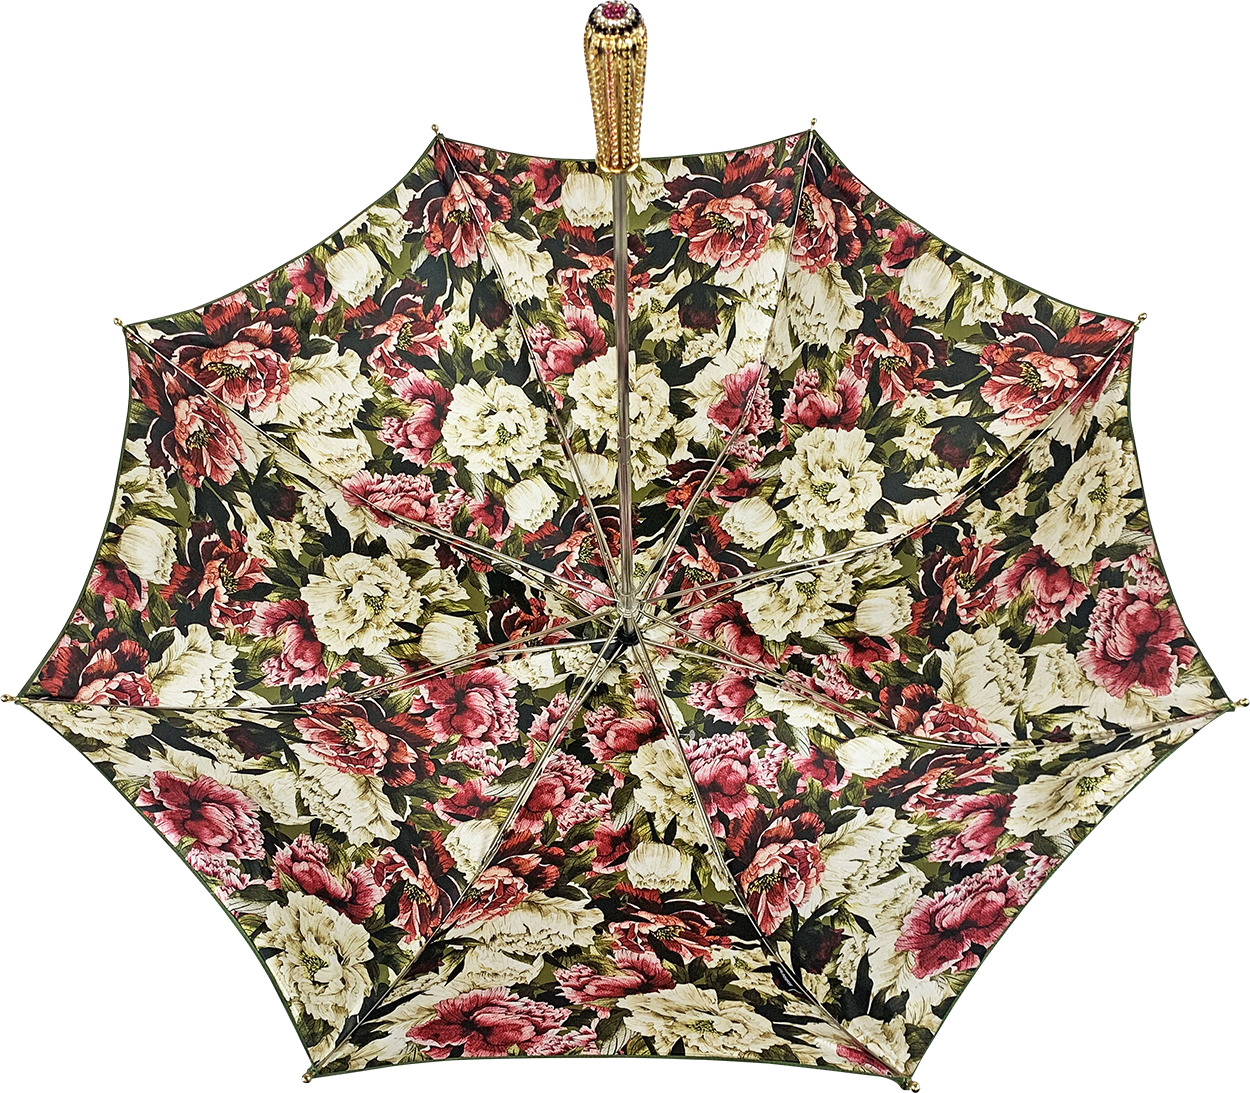 Handmade umbrella  - Flowered design in olive color